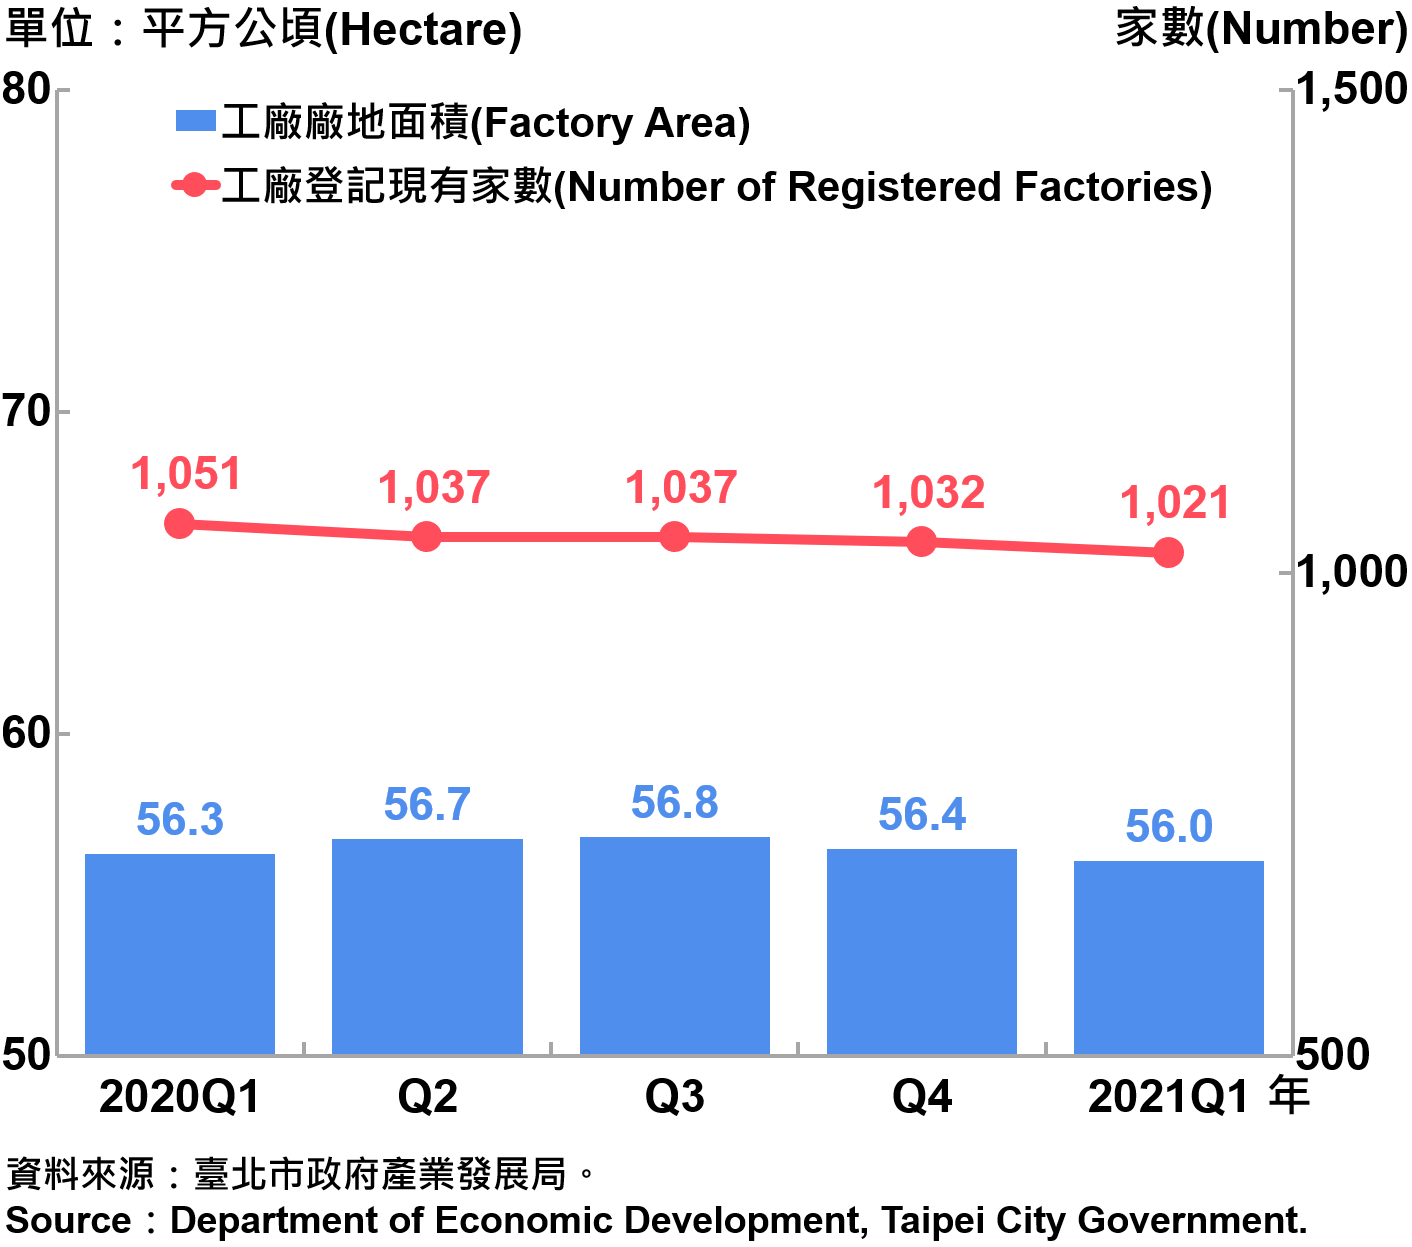 臺北市工廠登記家數及廠地面積—2021Q1 Number of Factories Registered and Factory Lands in Taipei—2021Q1